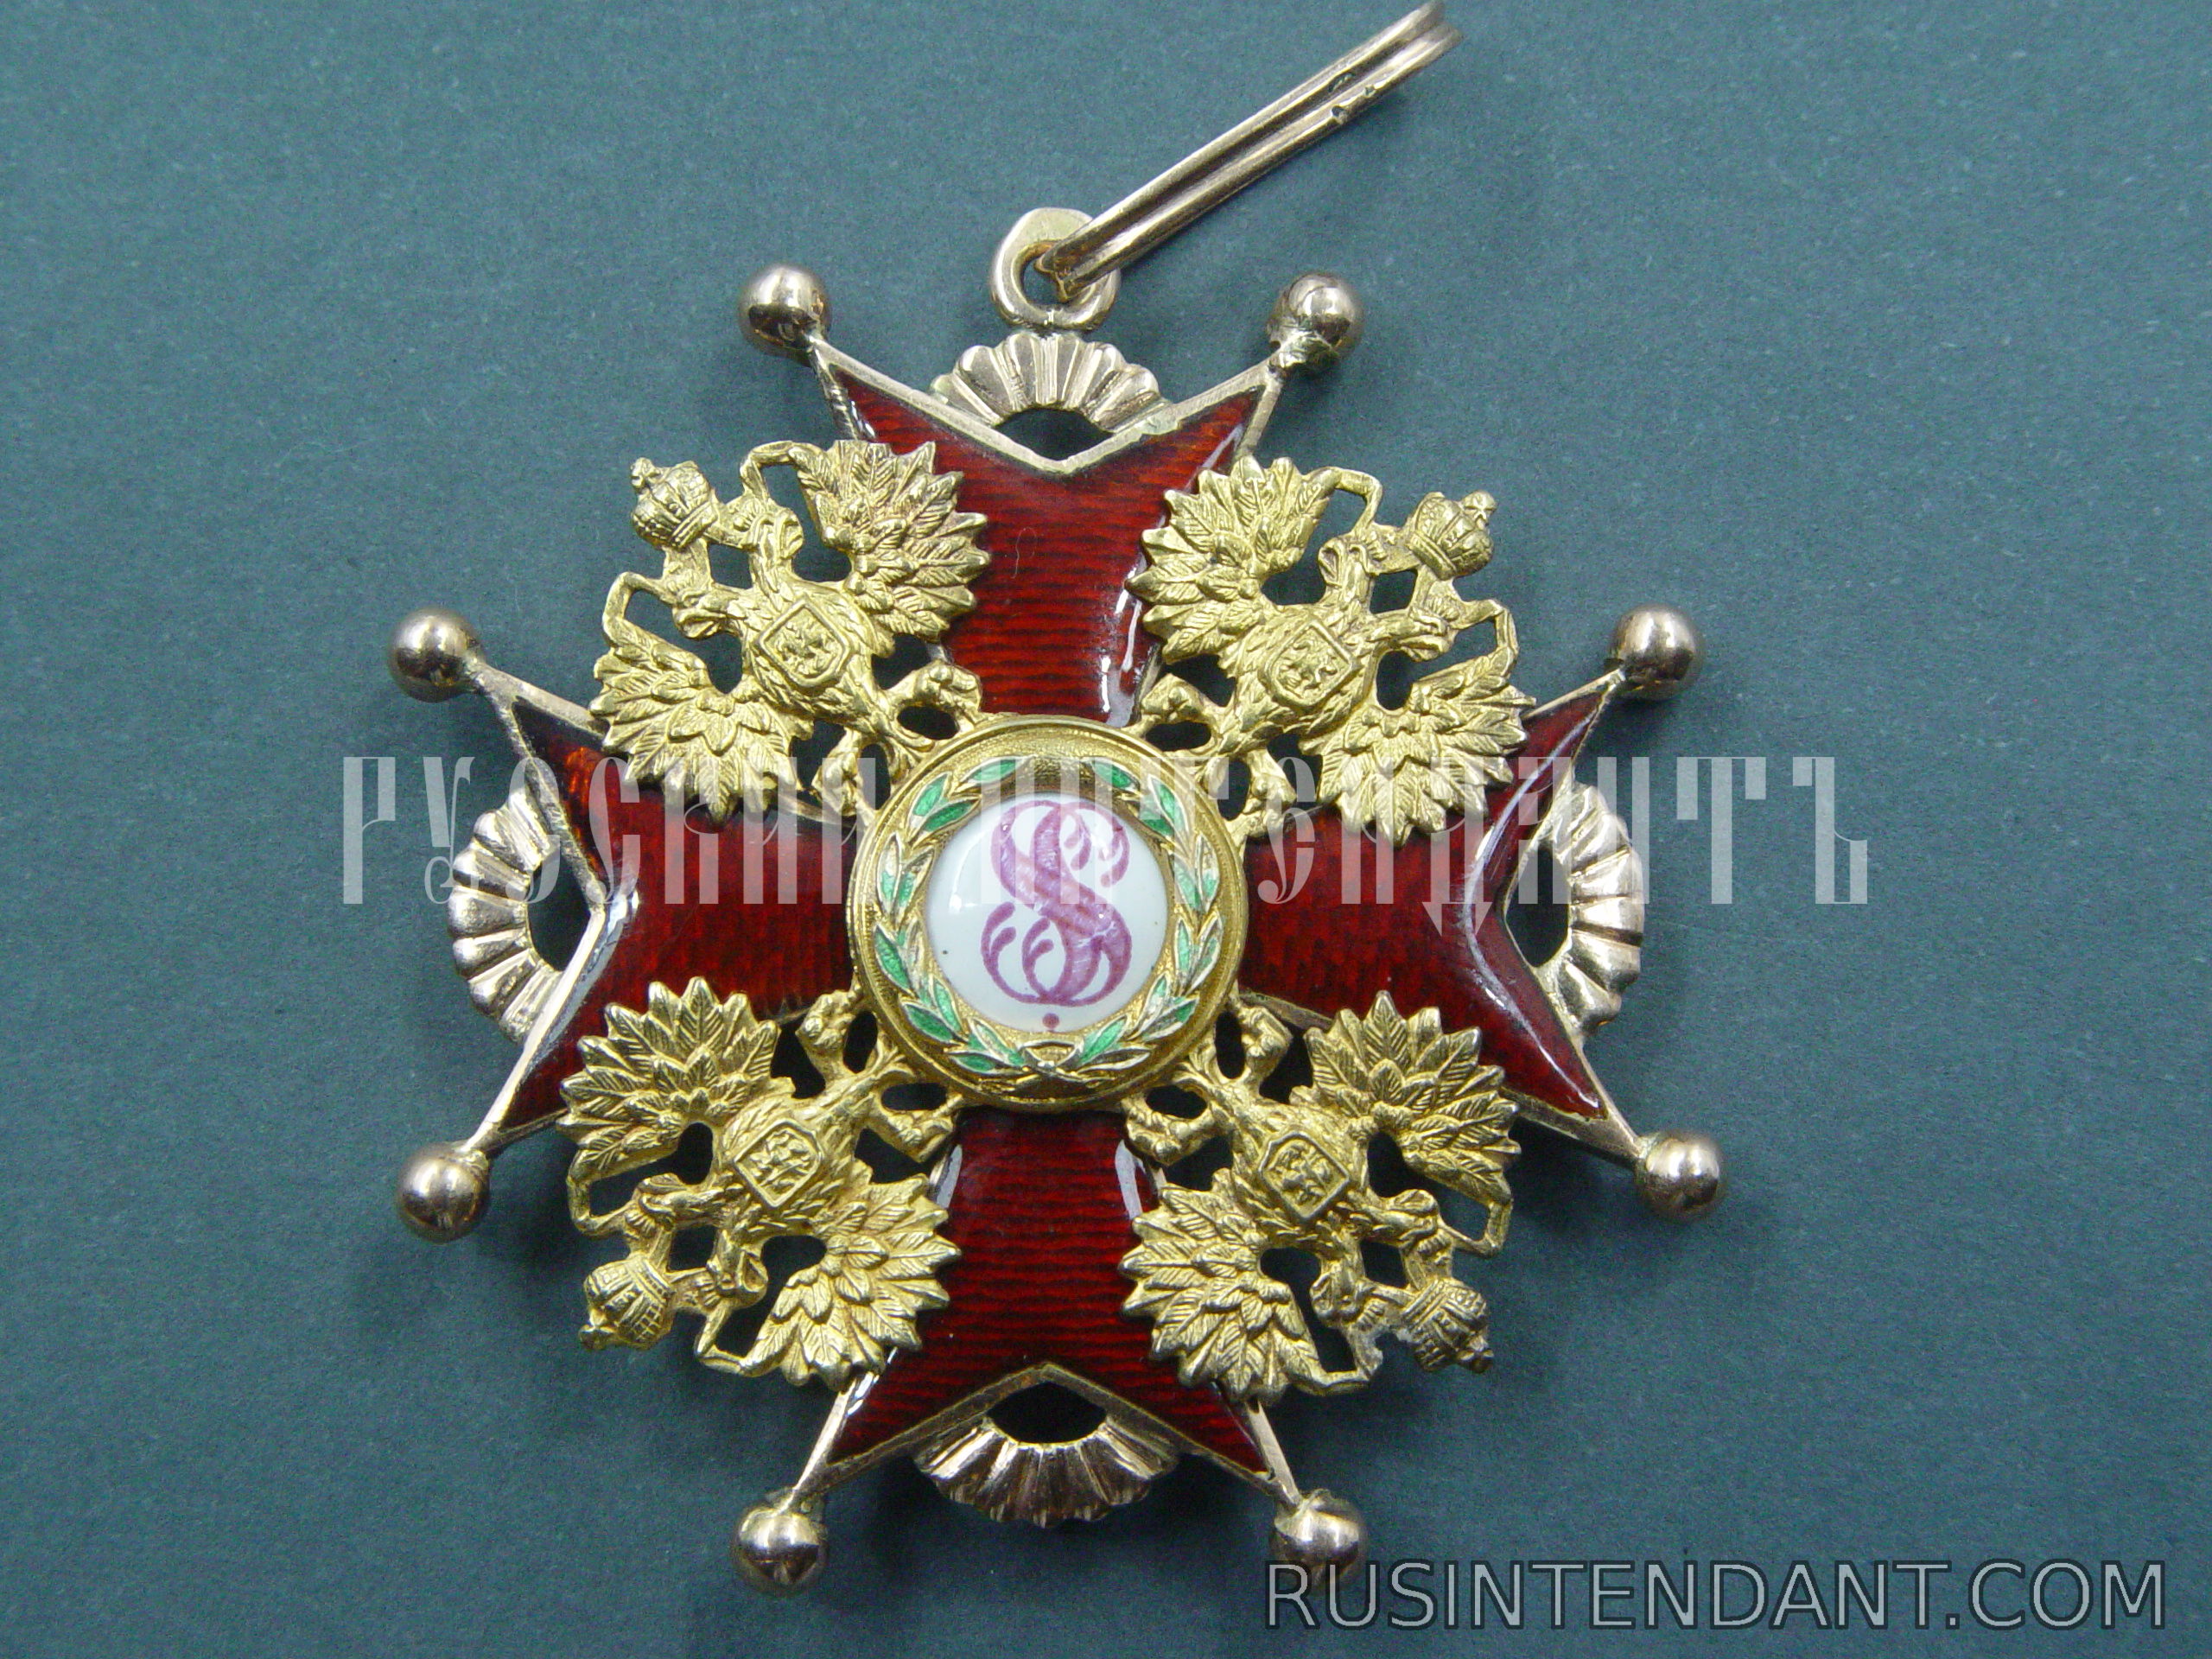 Фото 1: Орден Святого Станислава второй степени 